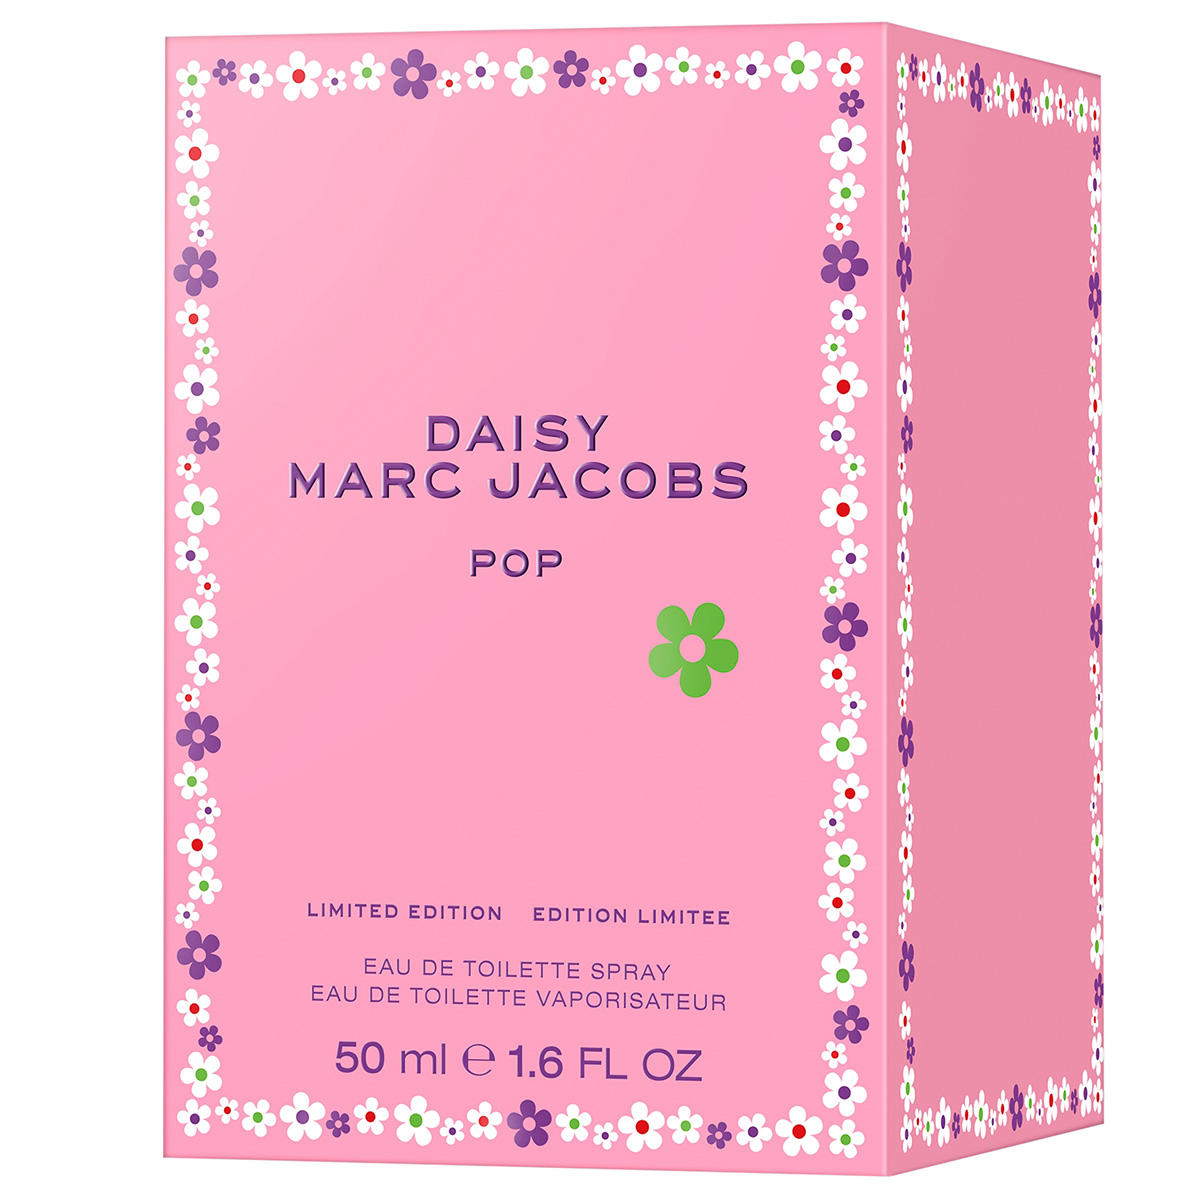 MARC JACOBS DAISY POP Limited Edition Eau de Toilette 50 ml - 2